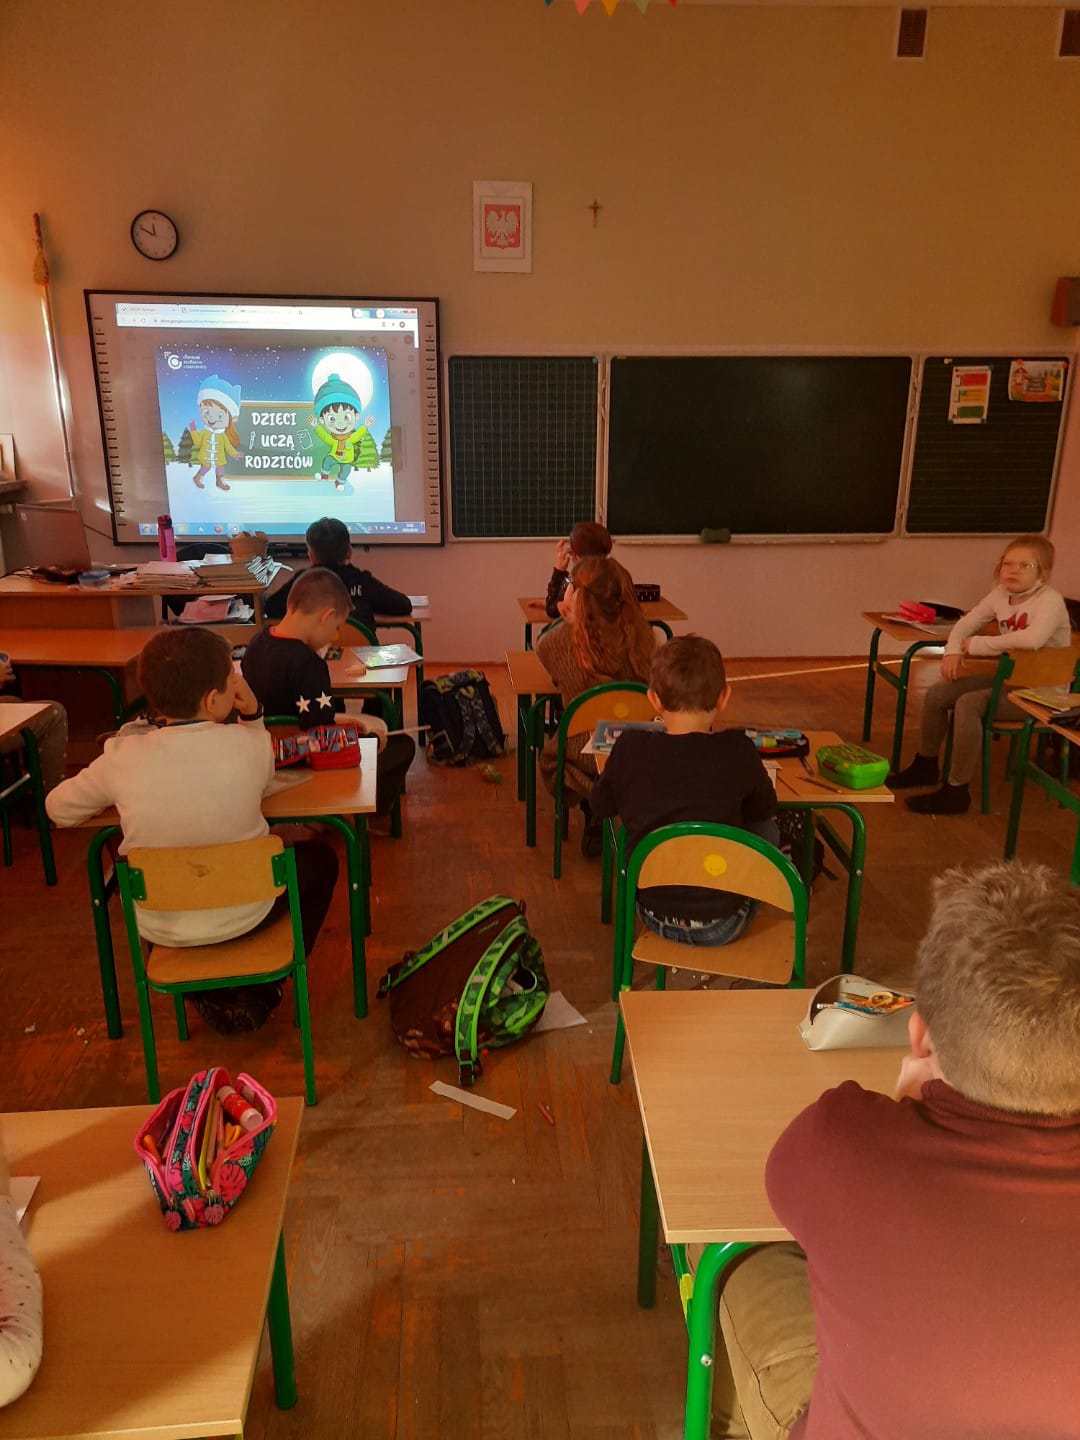 Oglnopolska akcja edukacyjna Dzieci ucz rodzicw - lekcja pita: Bezpieczne ferie